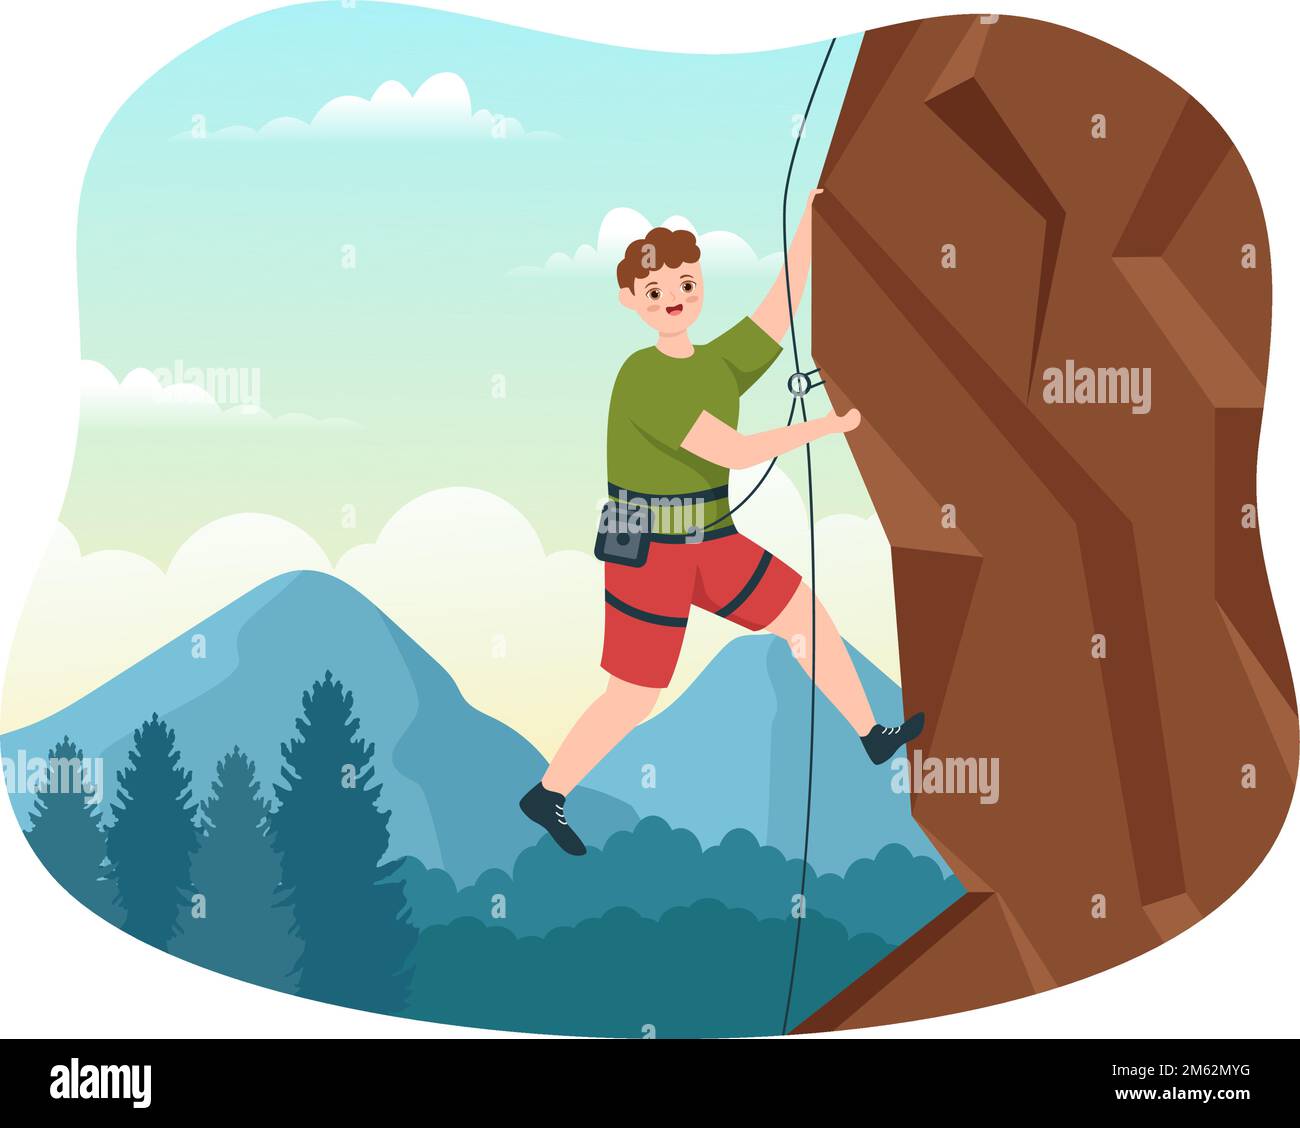 Cliff Climbing Illustration con Climber Climbing Rock Wall o Mountain Cliffs e Extreme Activity Sport in Flat Cartoon modello disegnato a mano Illustrazione Vettoriale